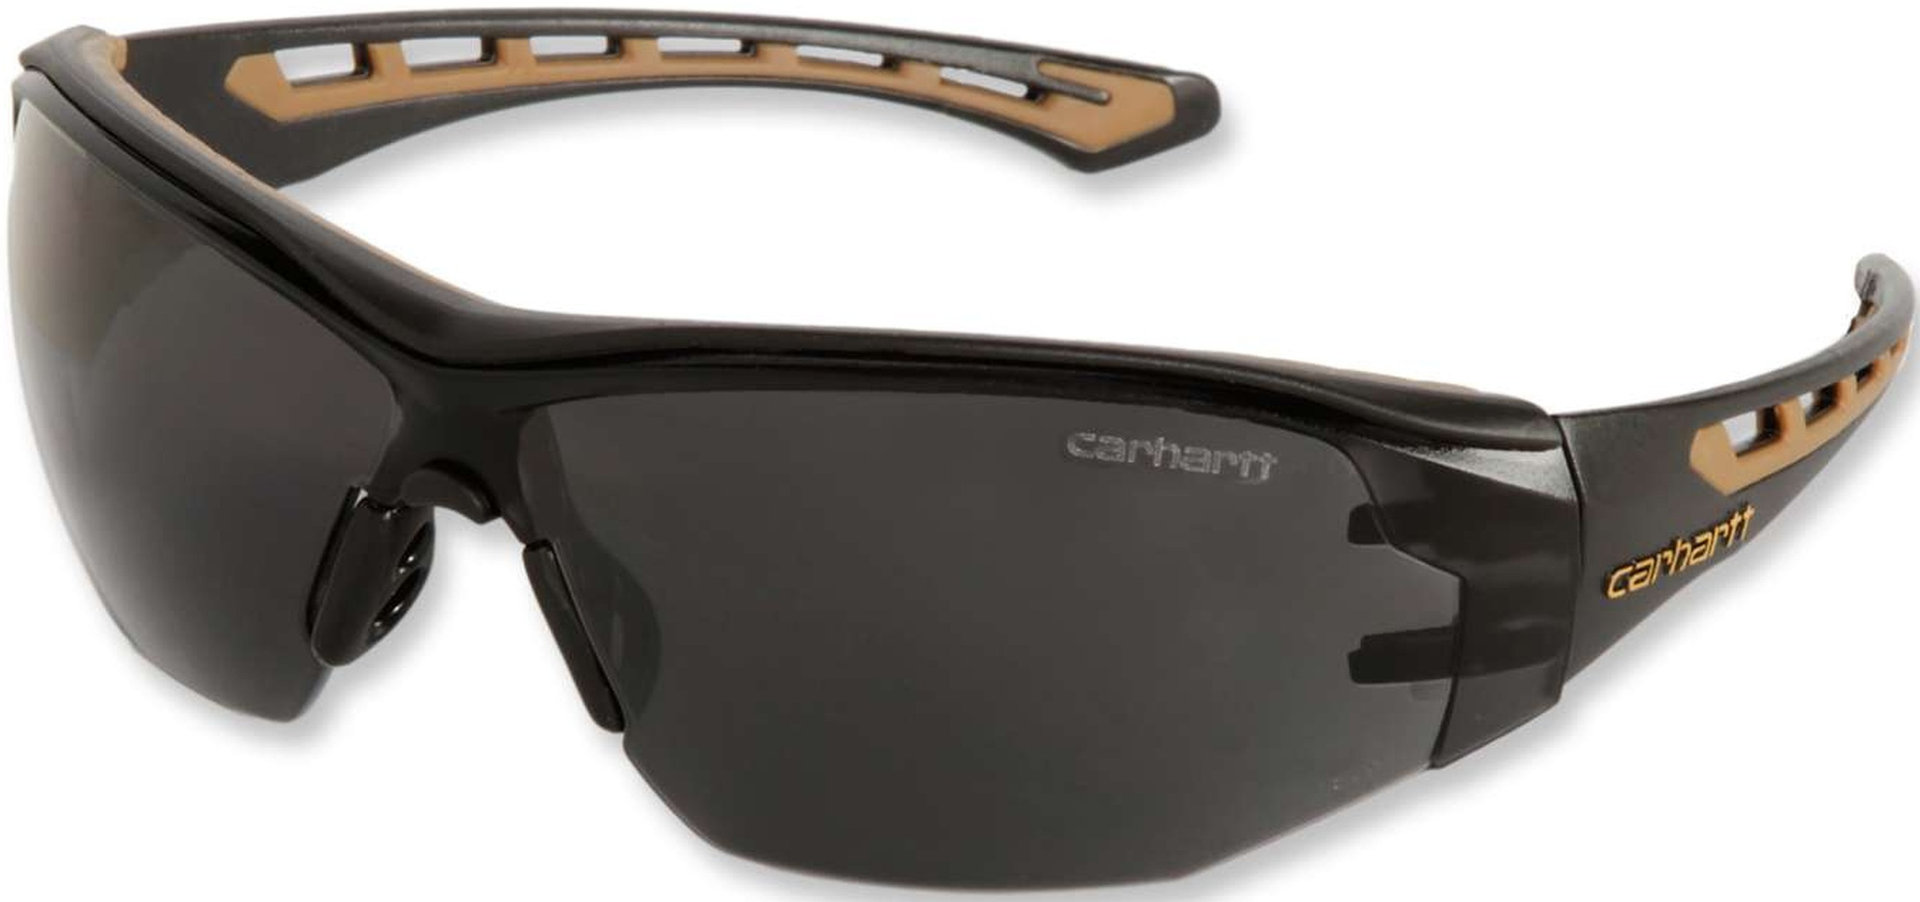 Carhartt Easely Schutzbrille Einheitsgröße Grau